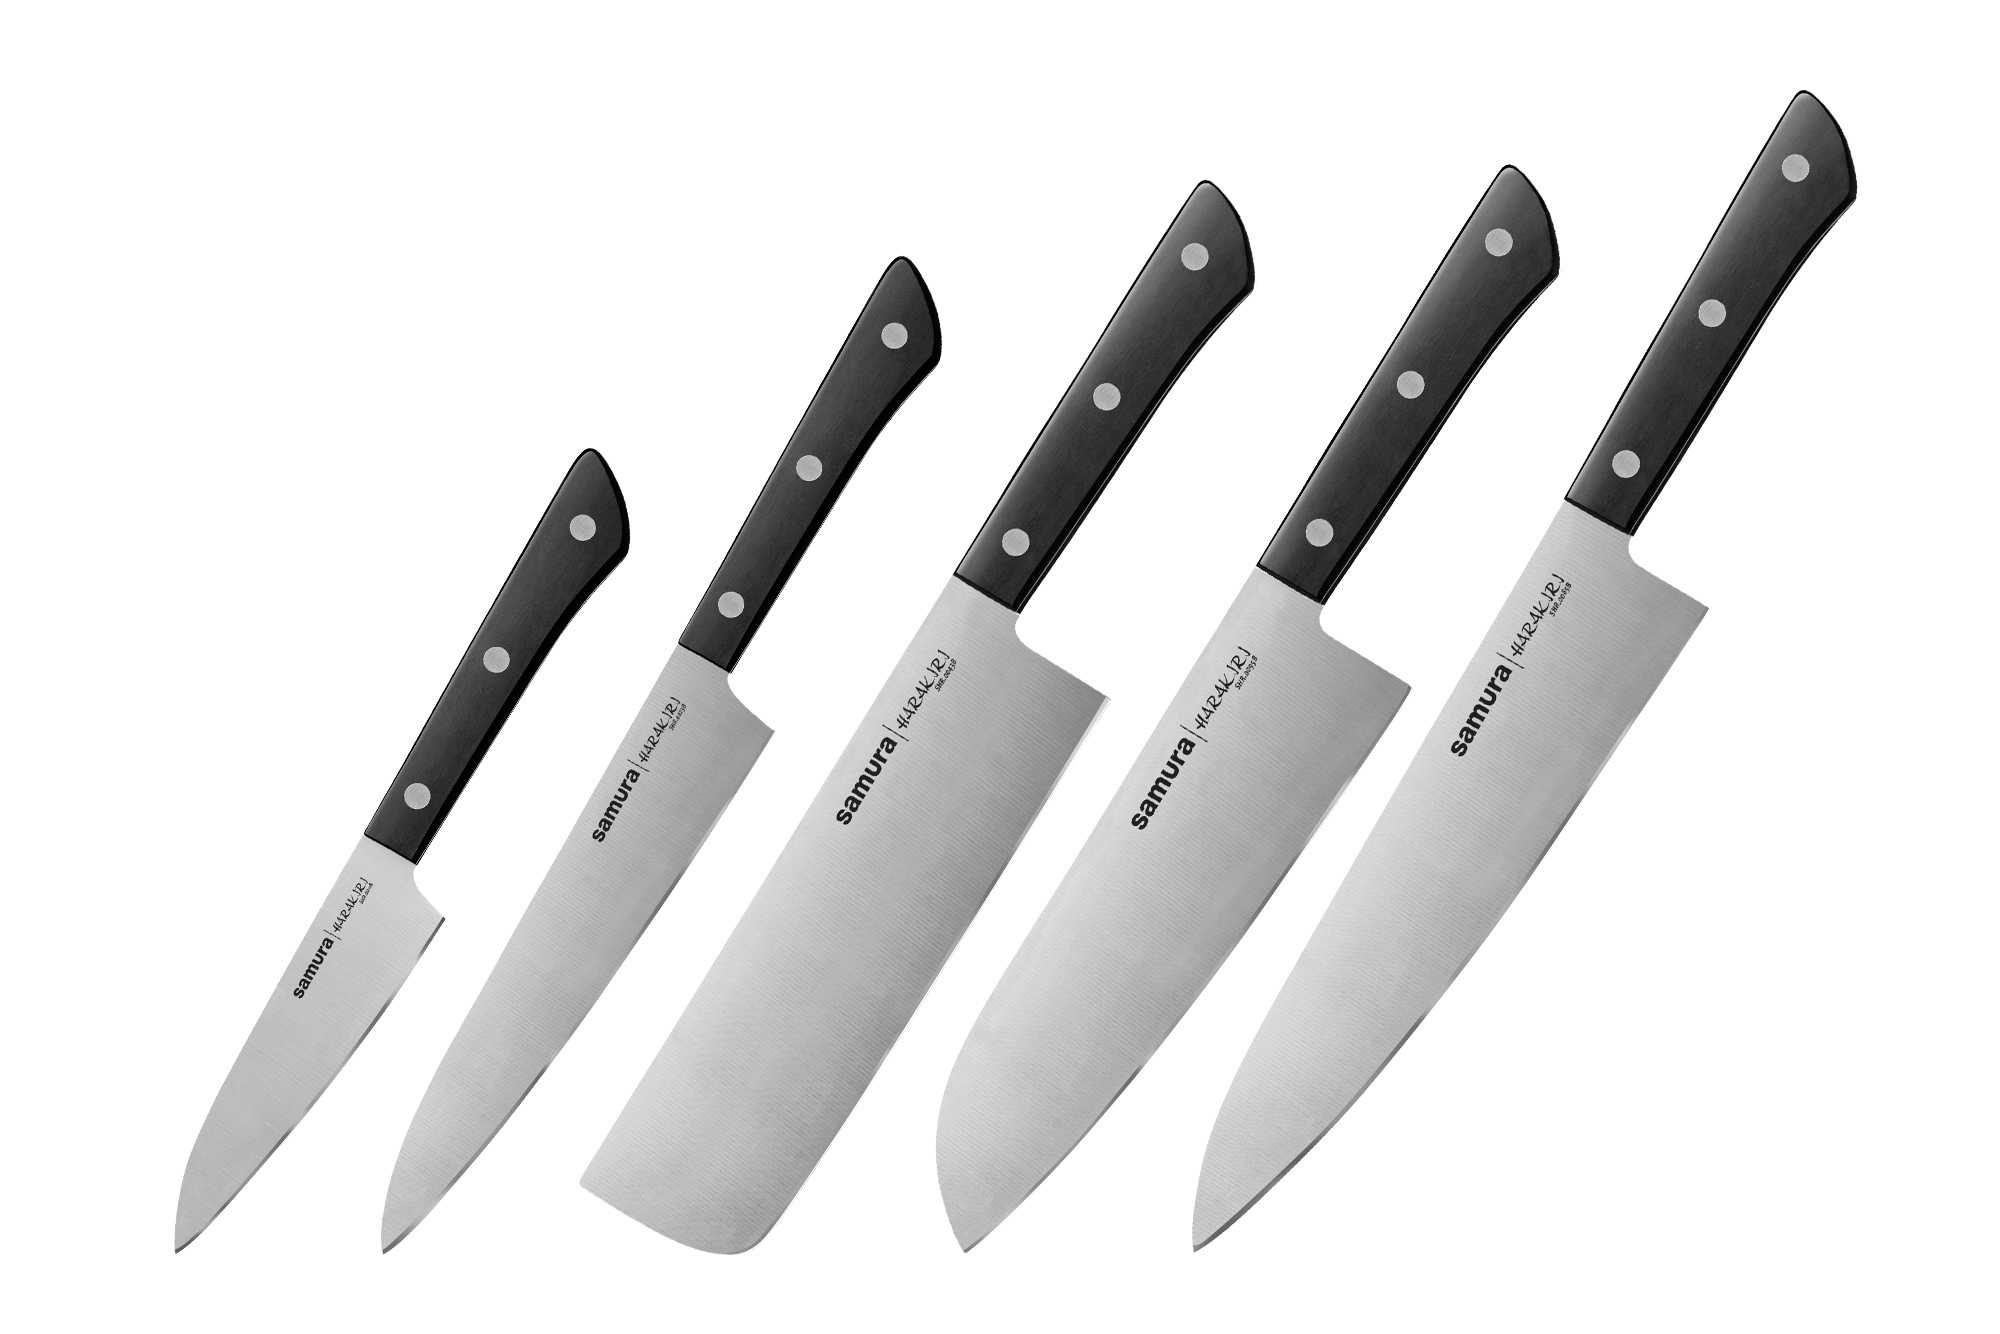 Отличный нож не так-то и просто найти Мы спросили у нескольких шефов, какой кухонный нож они считают лучшим И вот, что они ответили